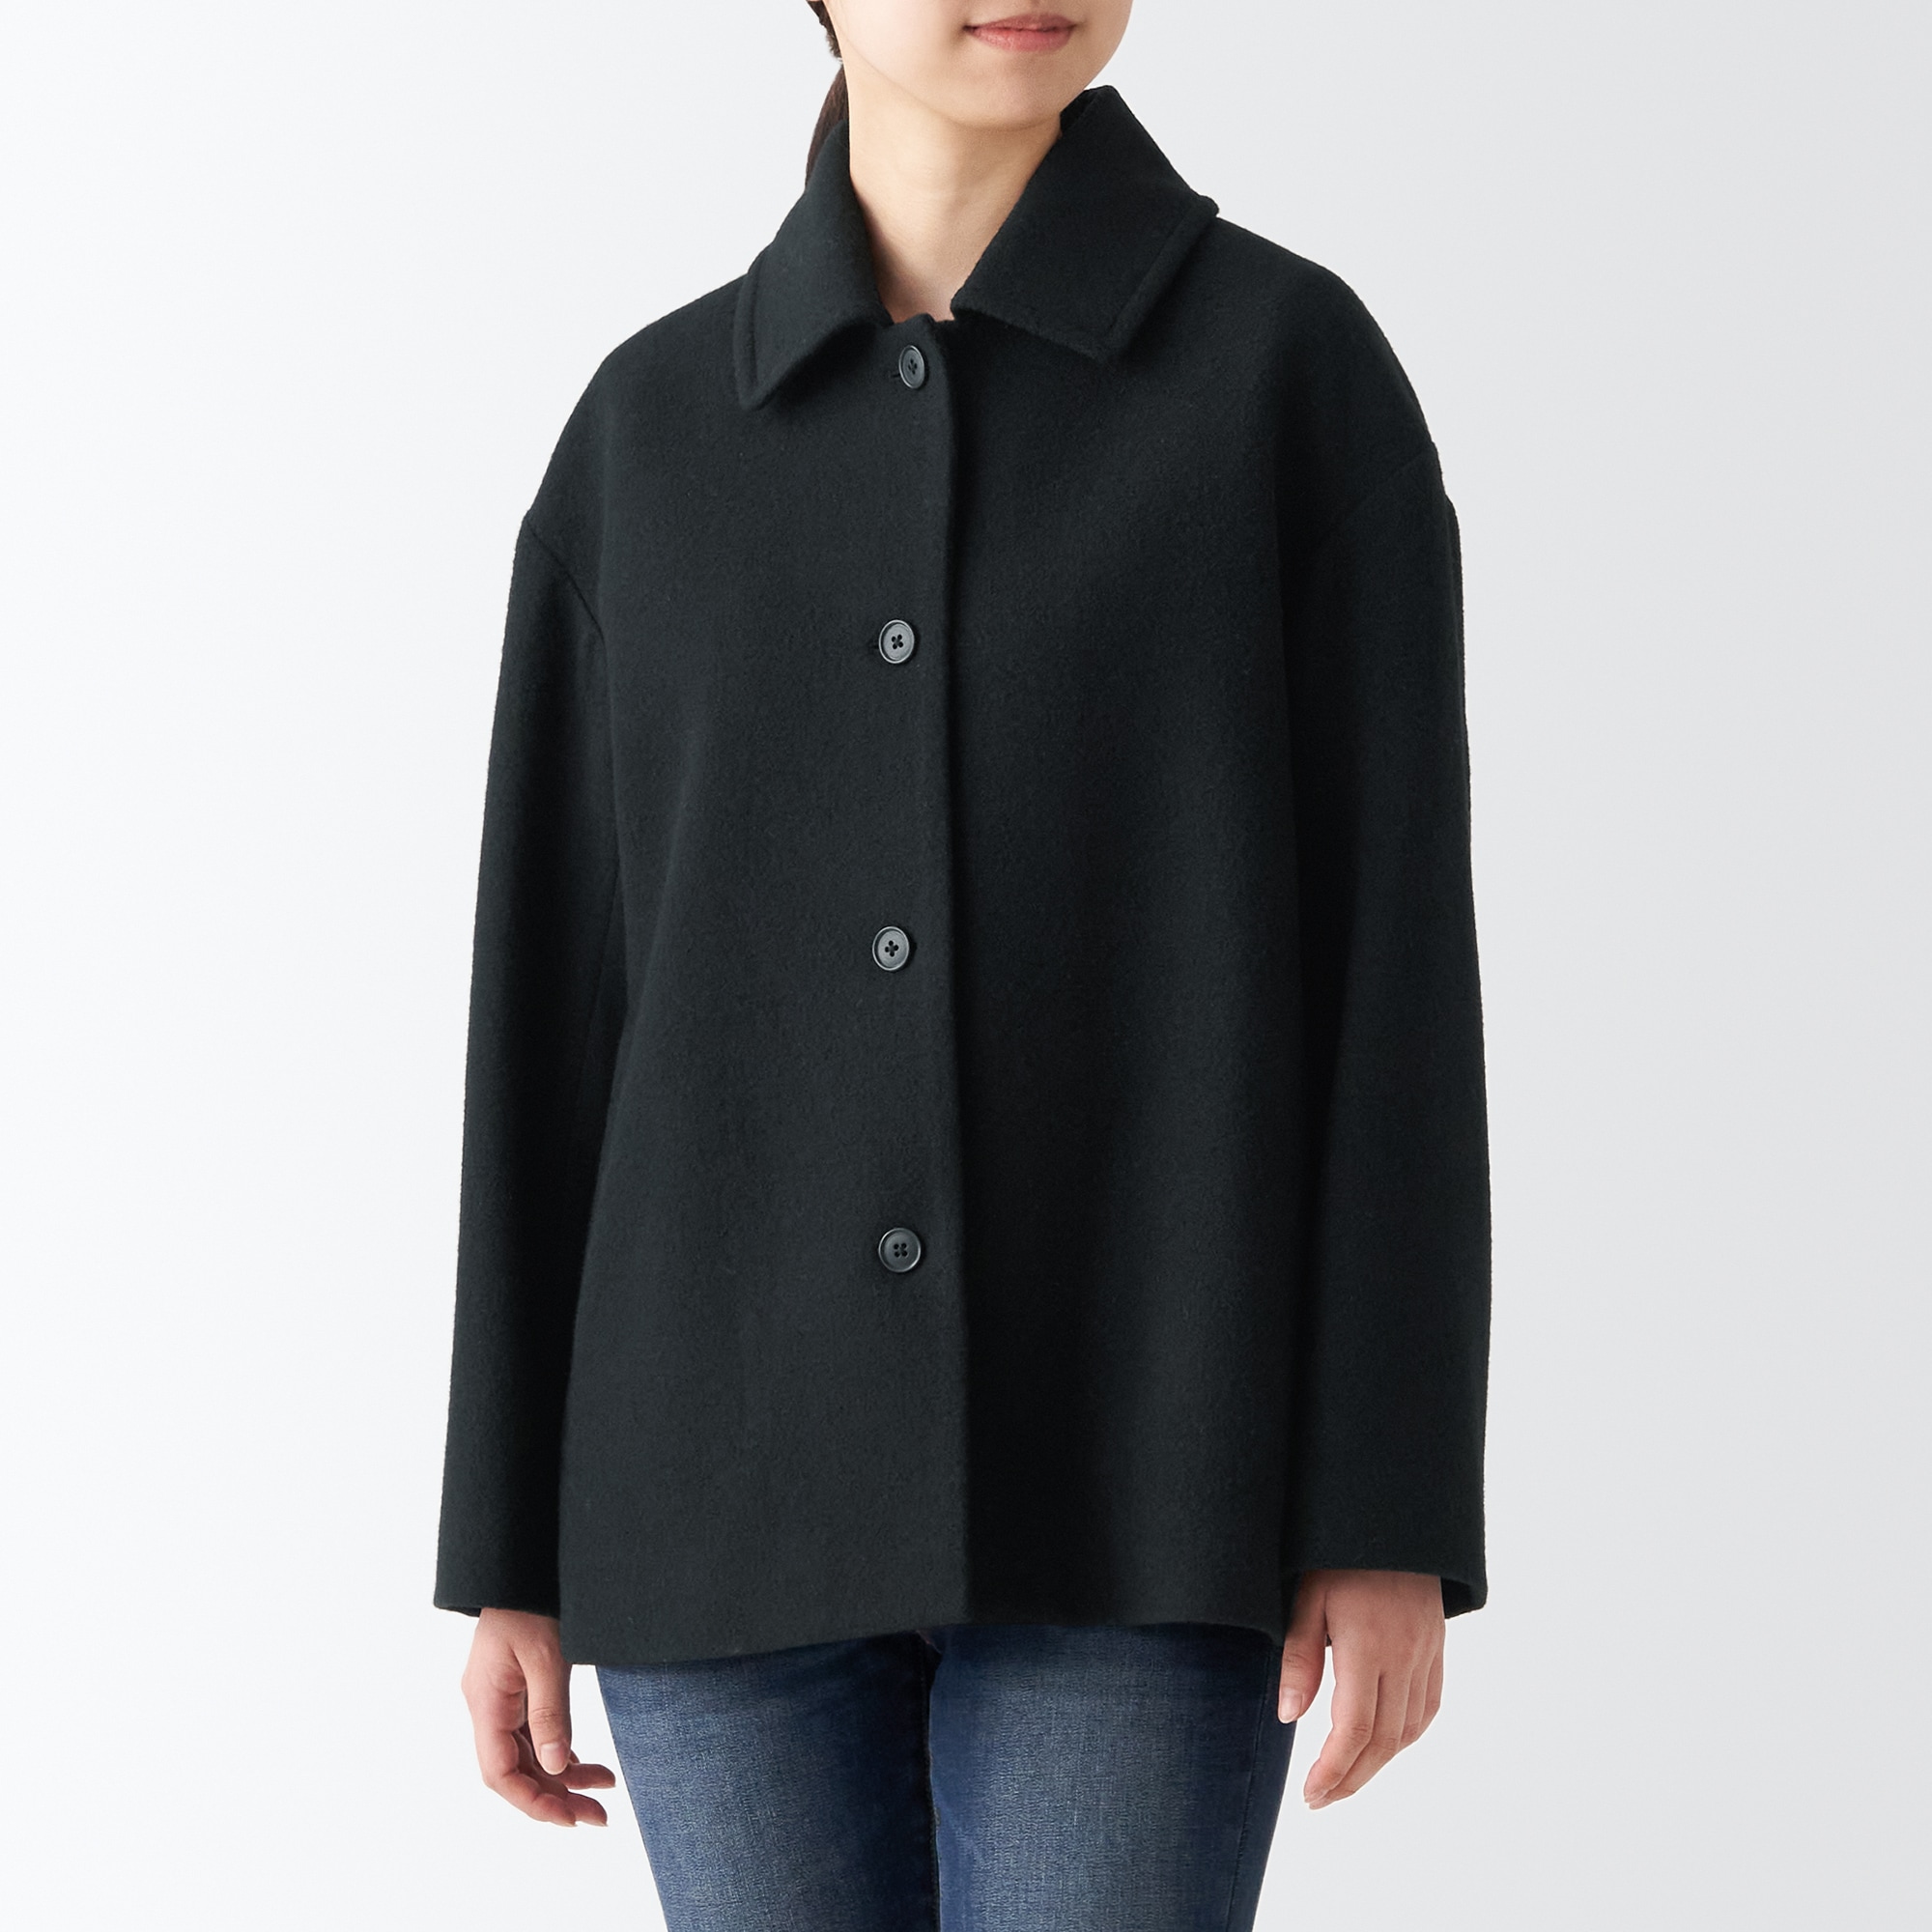 무인양품 일본 여성 스탠카라 울 혼방 코트 재킷 XS 블랙